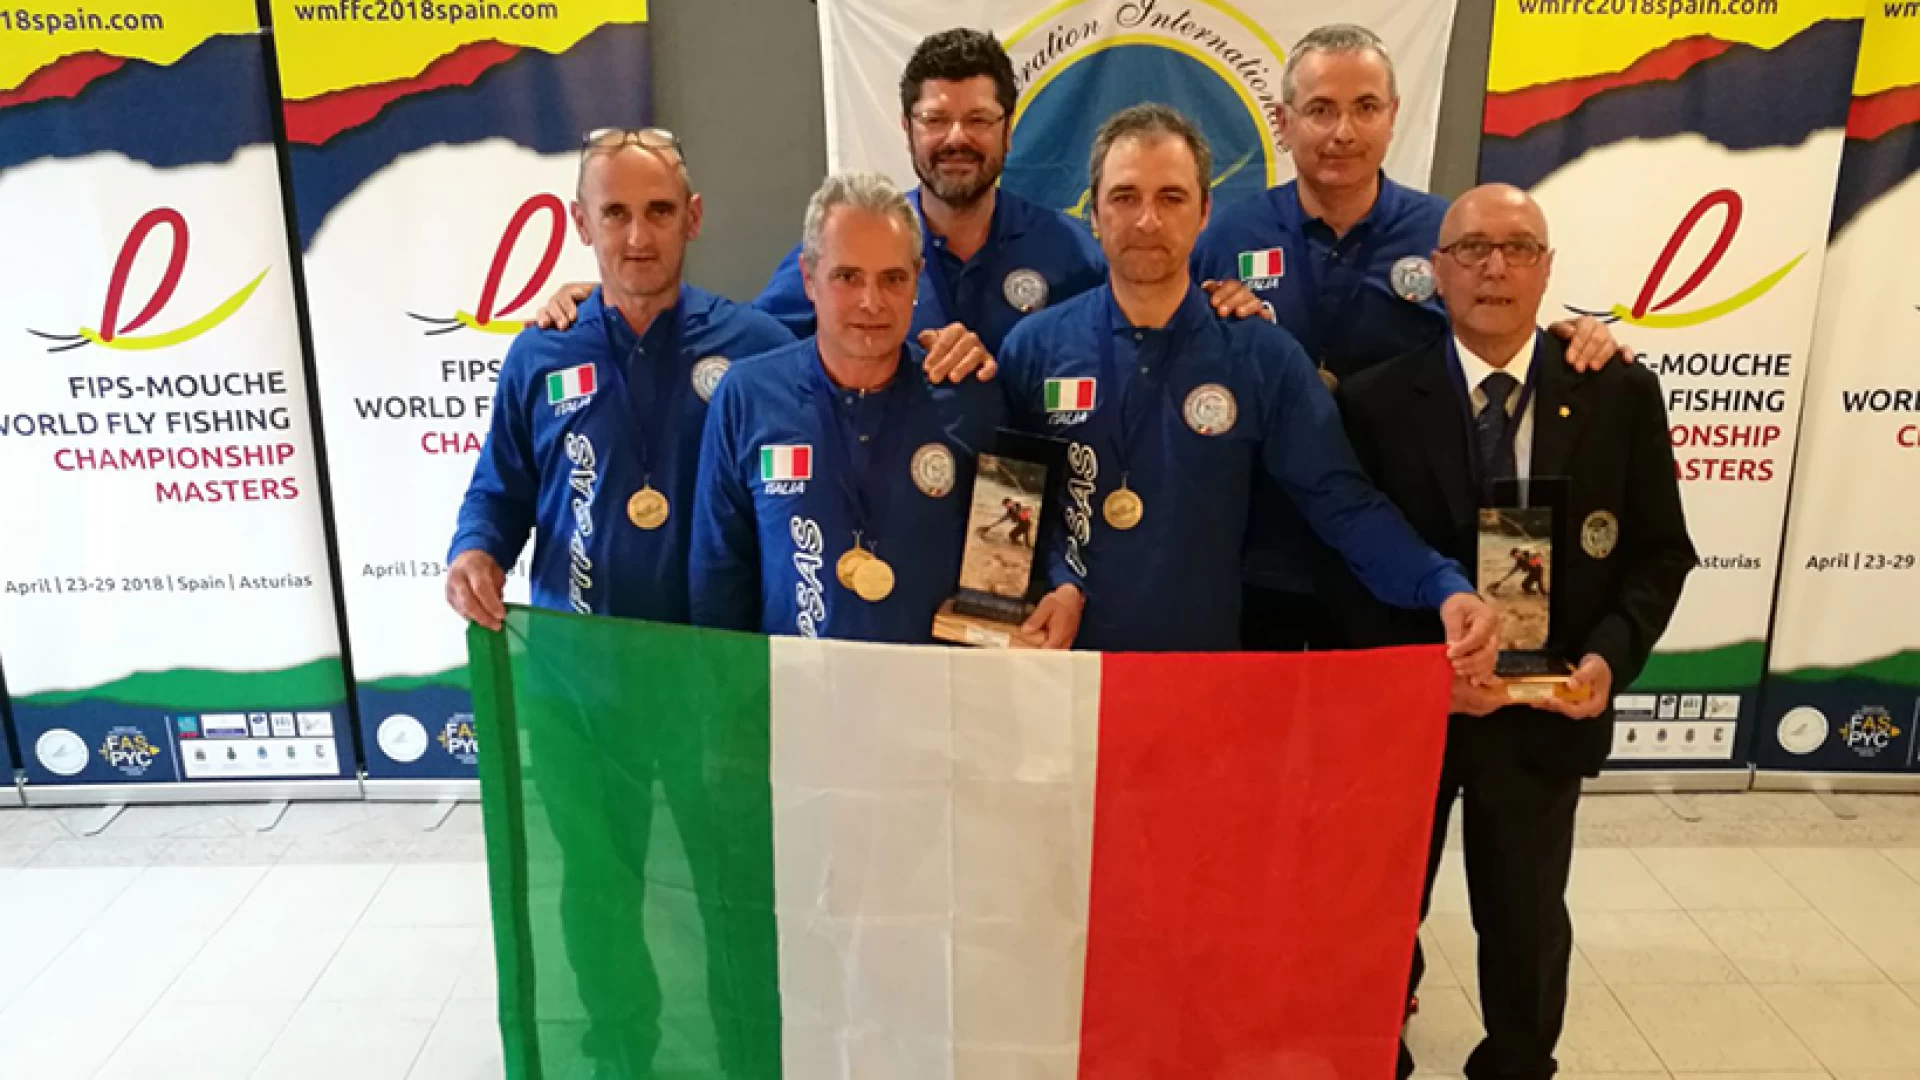 Pesca a mosca: l’Italia conquista l’argento a squadre al mondiale in Spagna. Grande protagonista il molisano Armando Di Giacomo.